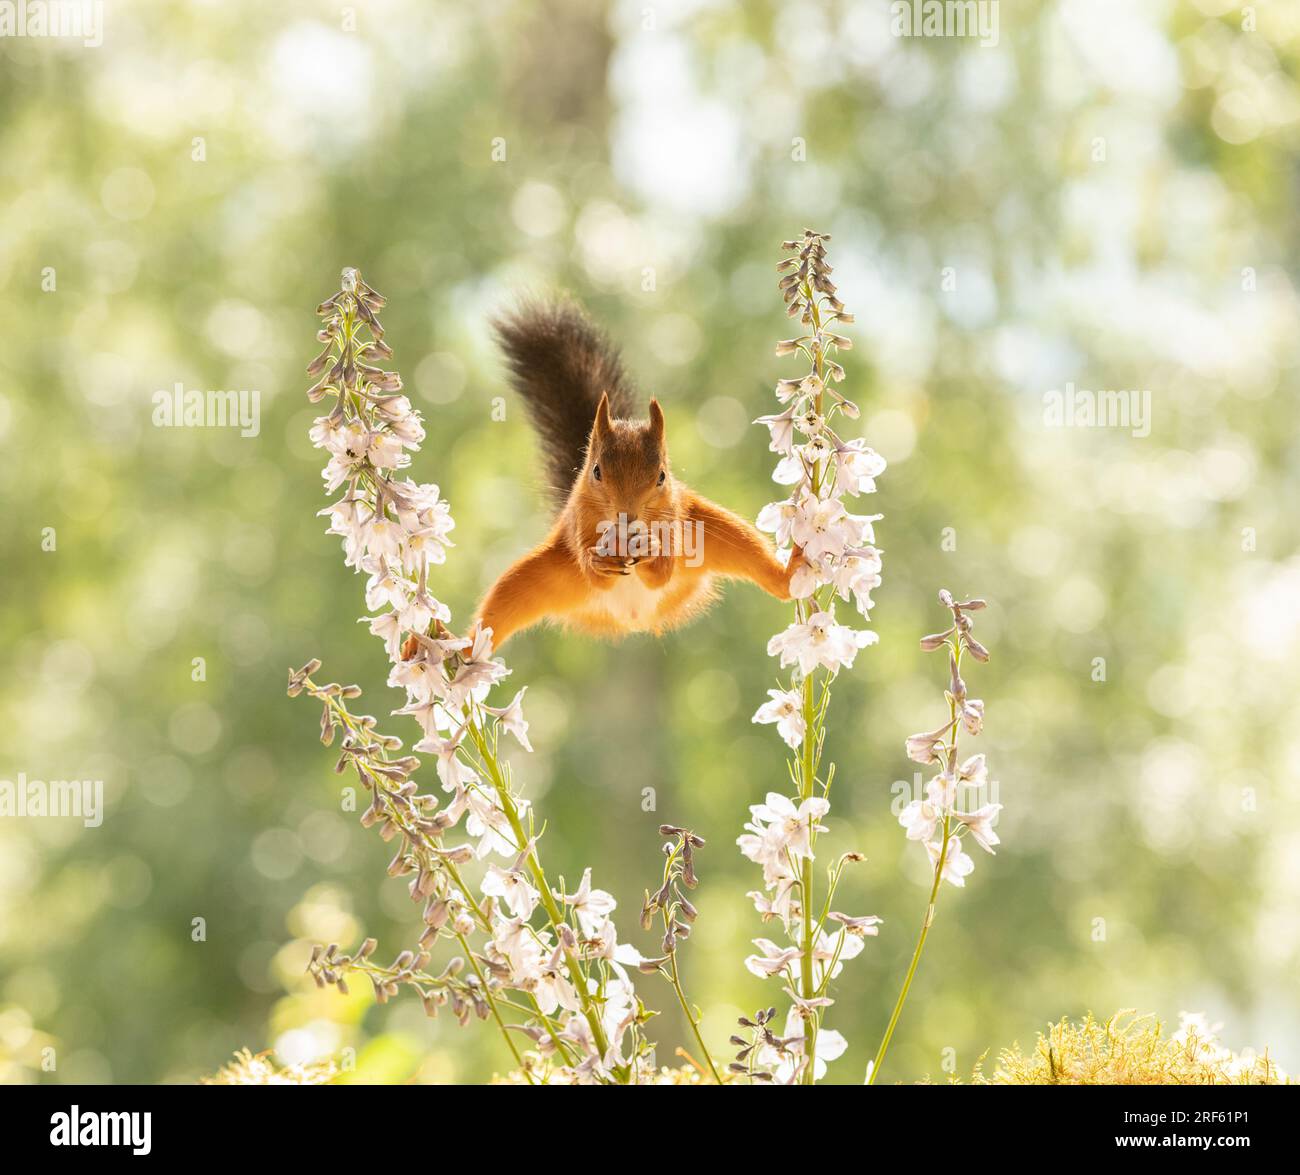 Red squirrel is standing between Delphinium flowers Stock Photo